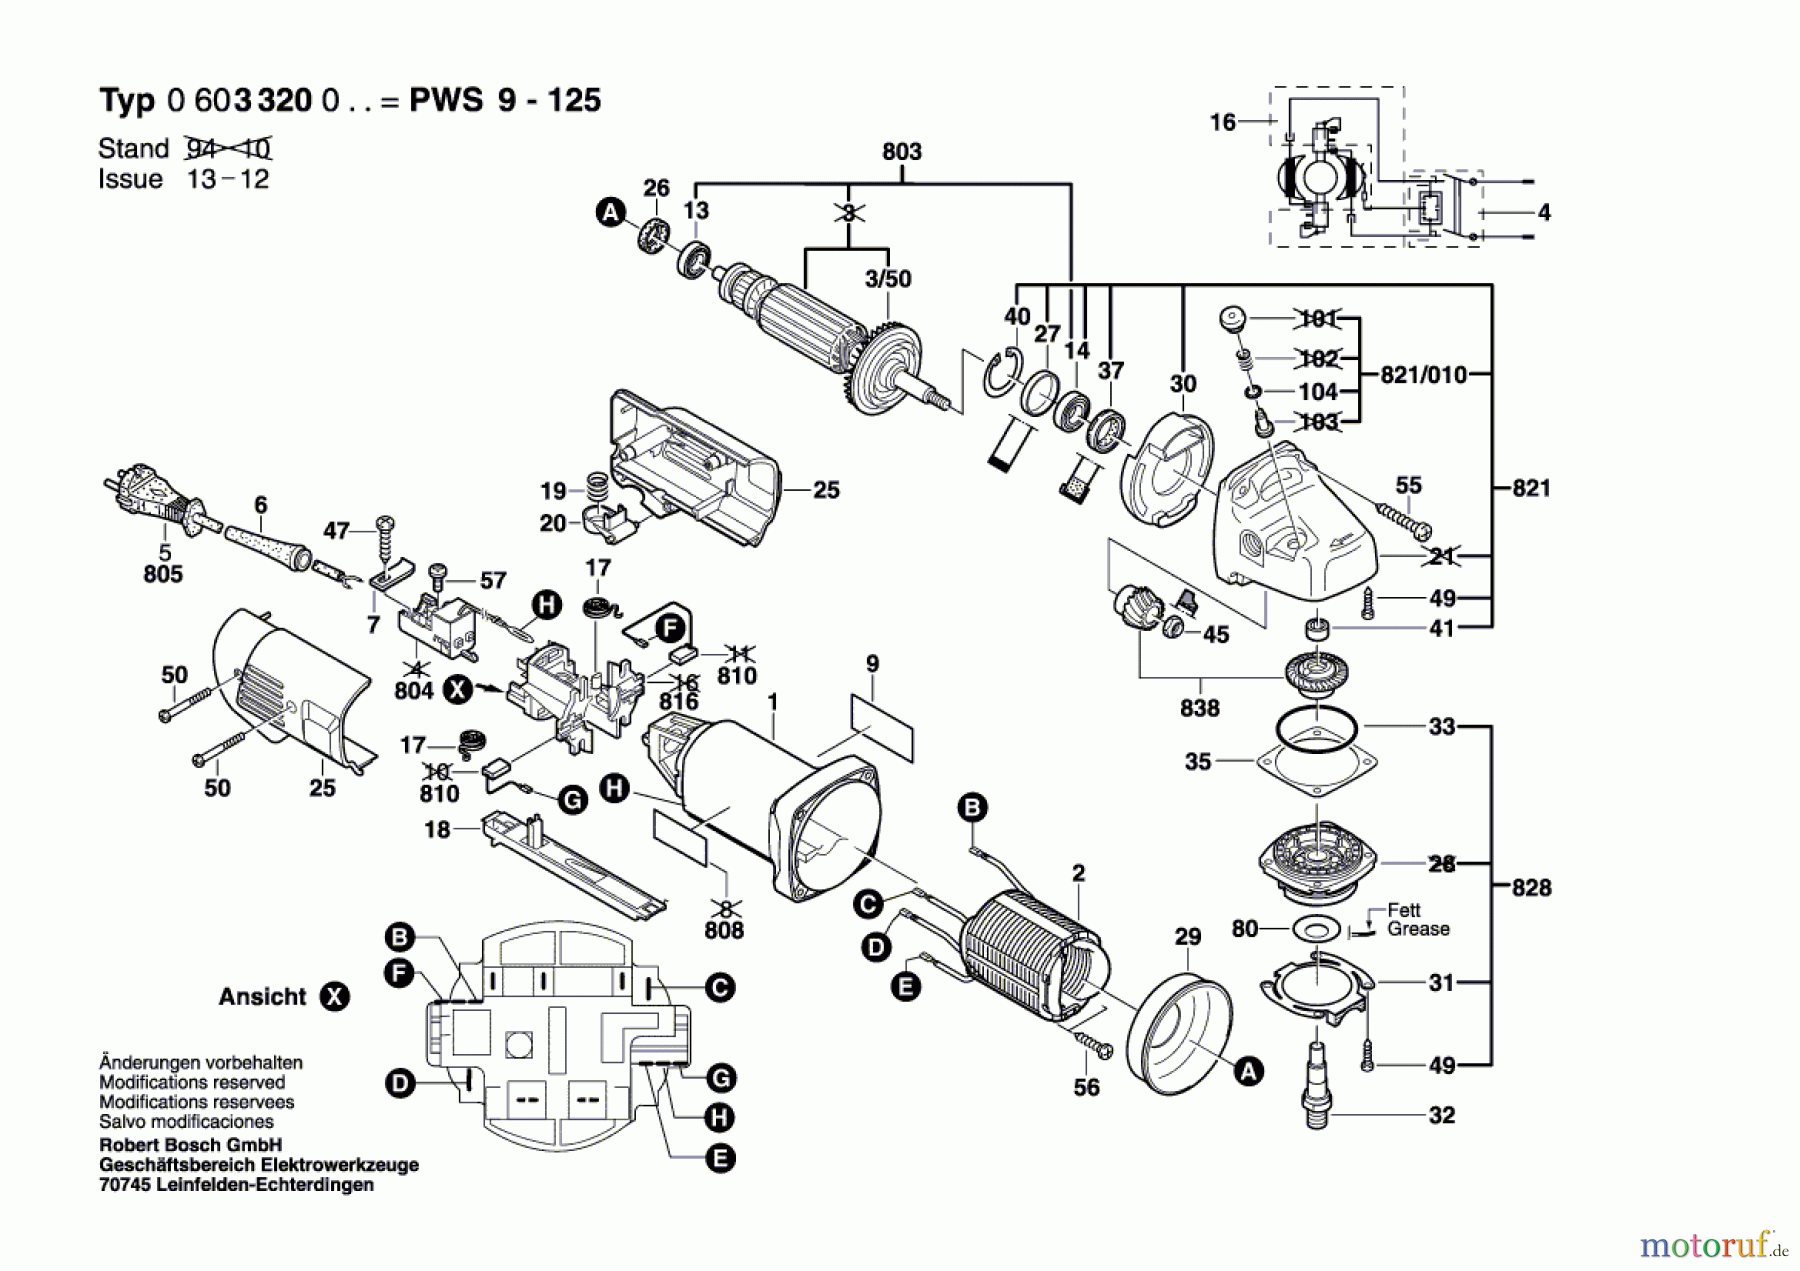  Bosch Werkzeug Gw-Winkelschleifer PWS 9-125 Seite 1